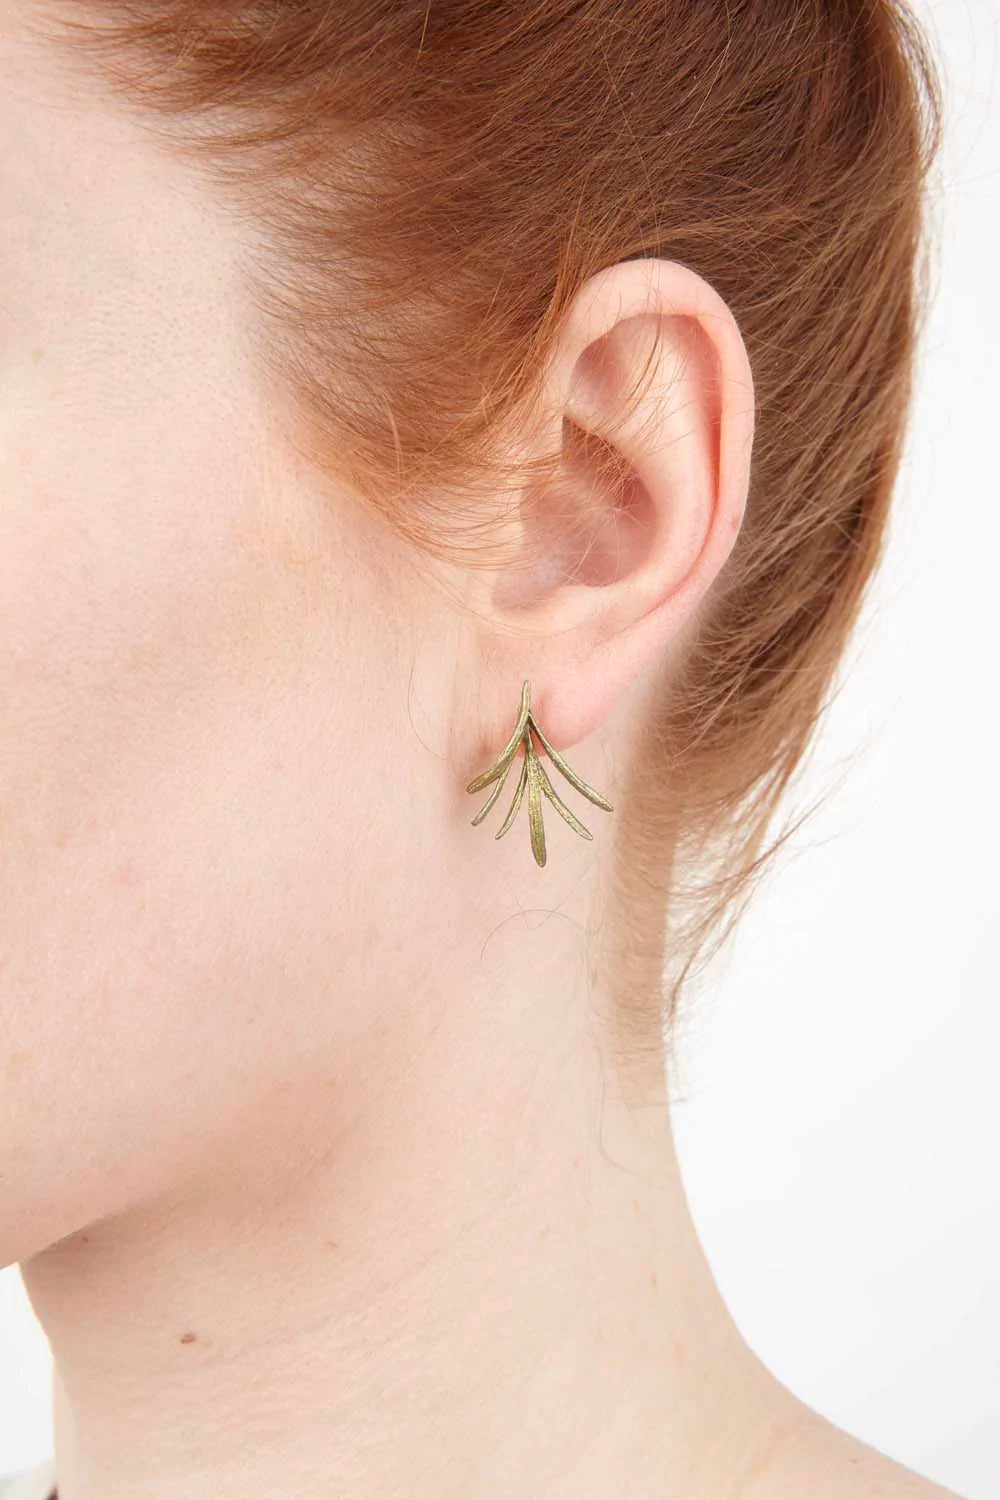 プチハーブ - ローズマリーのポストピアス / Petite Herb - Rosemary Post Earrings